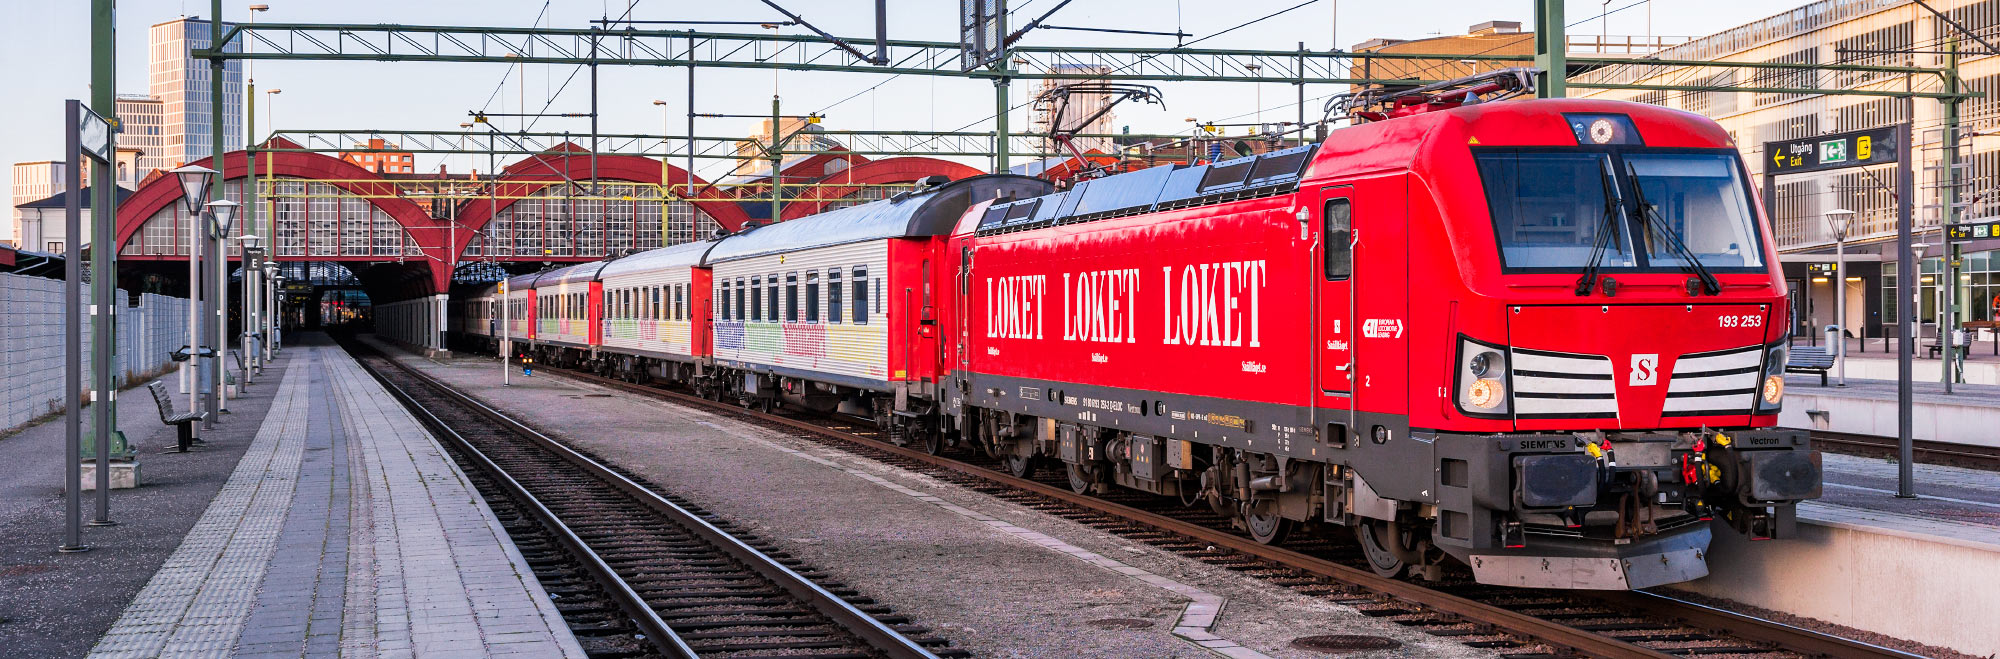 Snälltåget 193 253 med persontåg i Malmö 2016